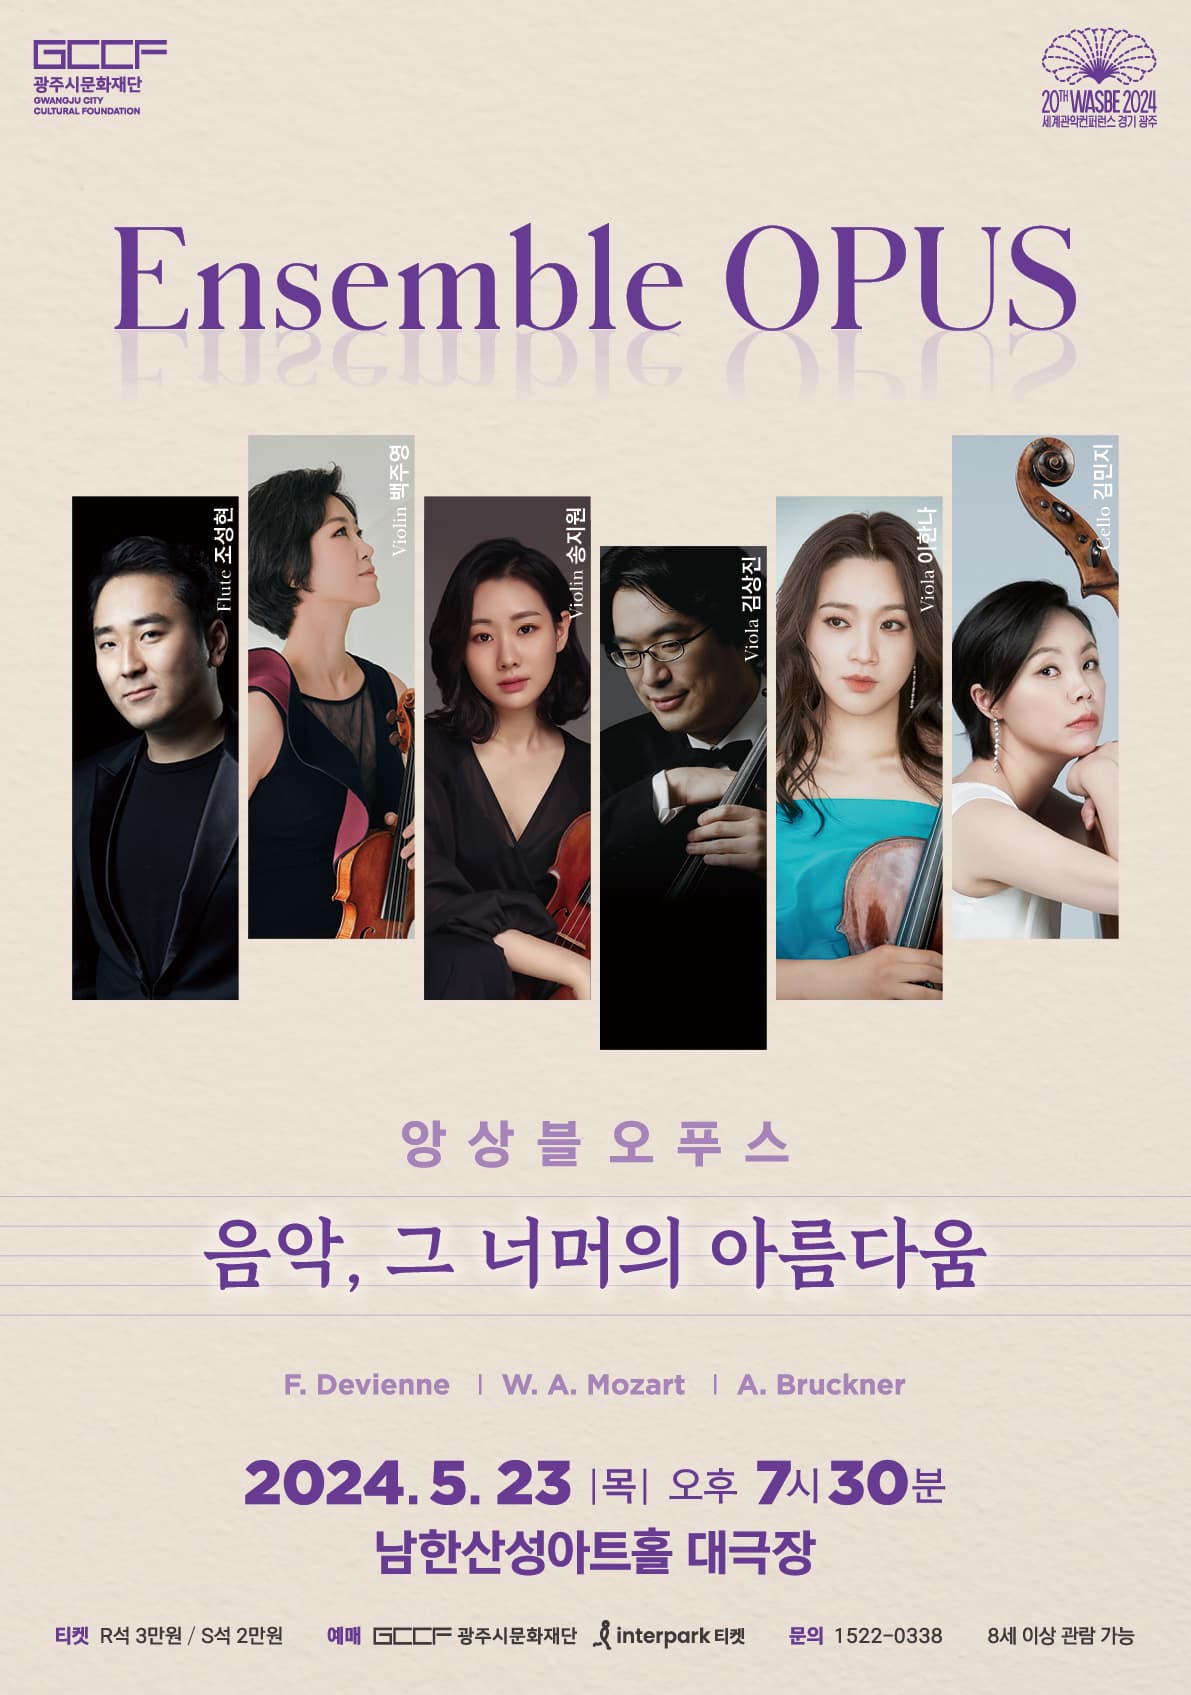 앙상블 오푸스 '음악, 그 너머의 아름다움'  | 2024년 5월 23일 일요일 오후 7시 30분| 남한산성아트홀 대극장